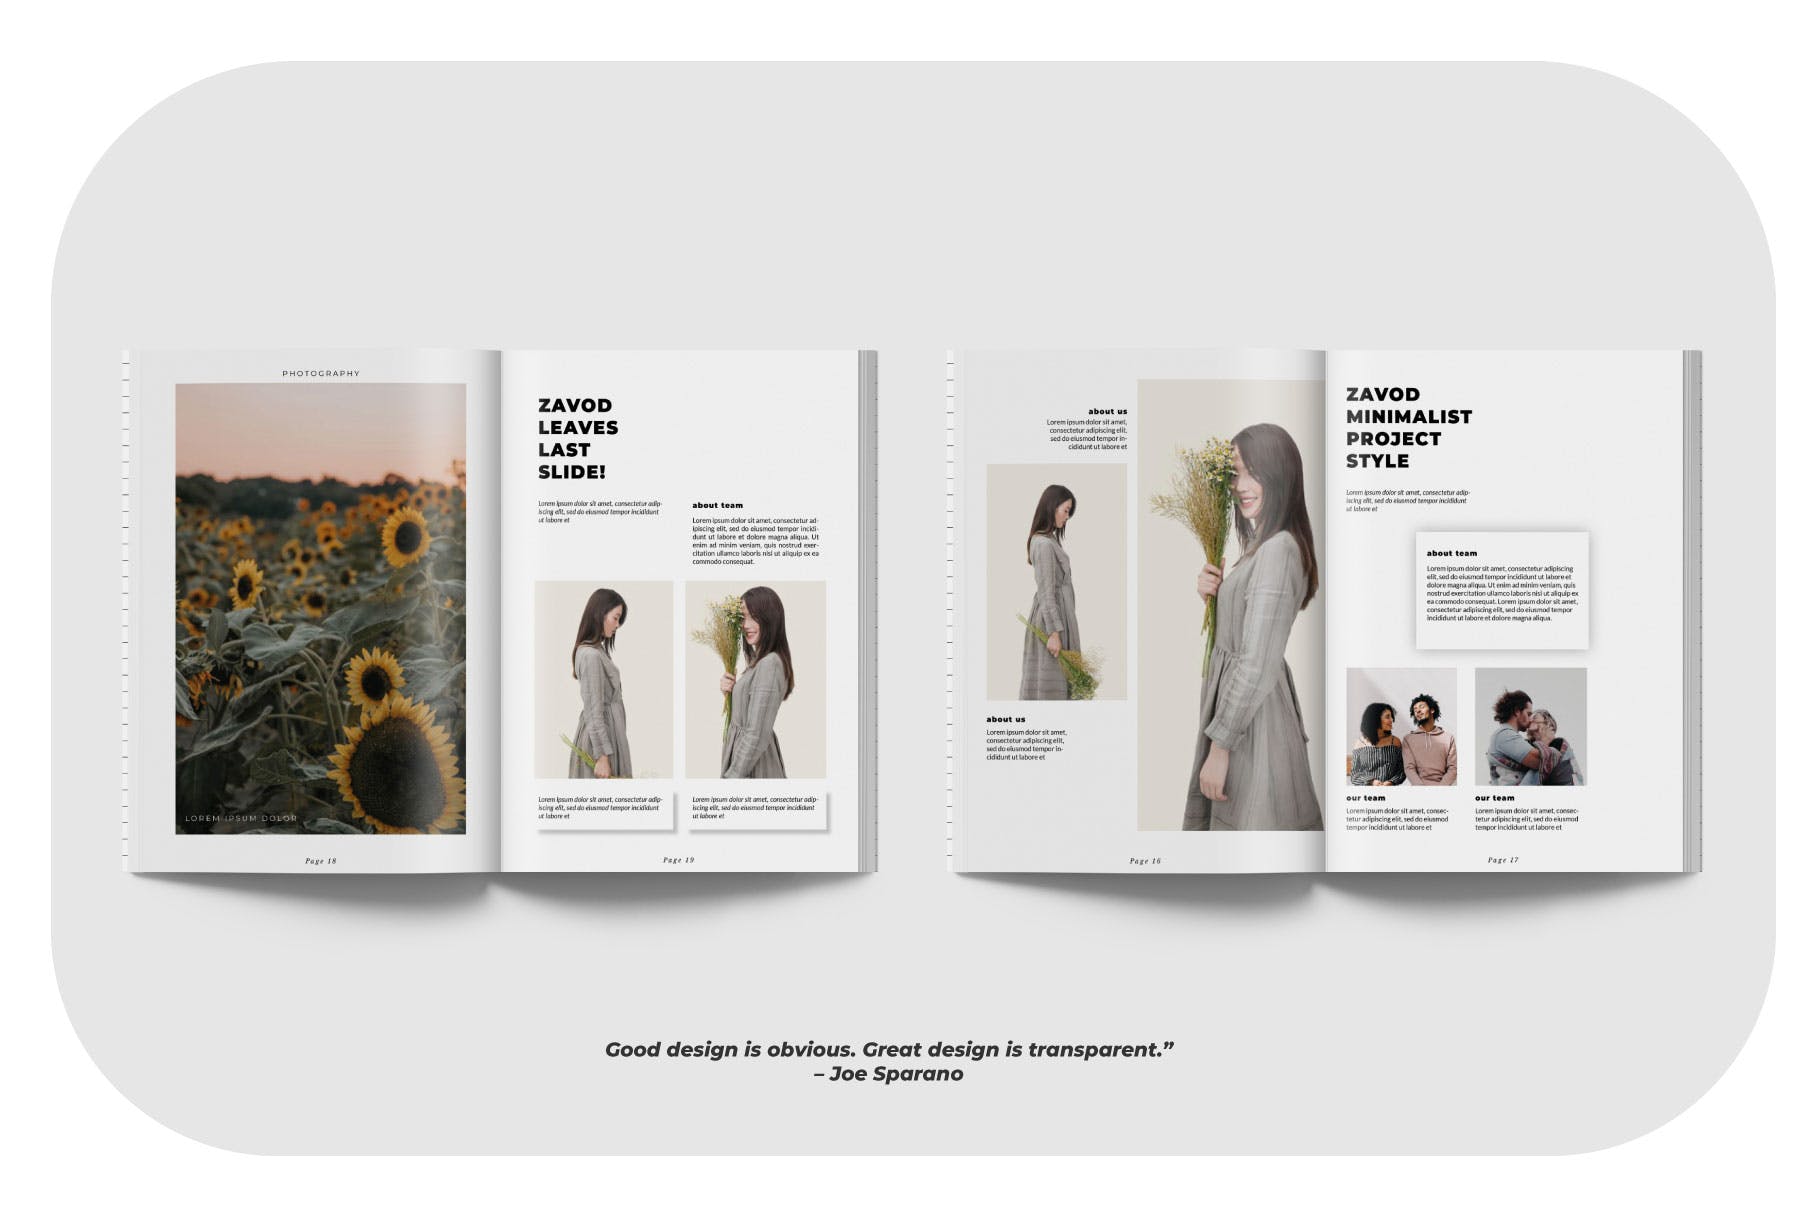 摄影/模特主题非凡图库精选杂志排版设计模板 ZAVOD Business Magazine Minimal Template – LS插图(3)